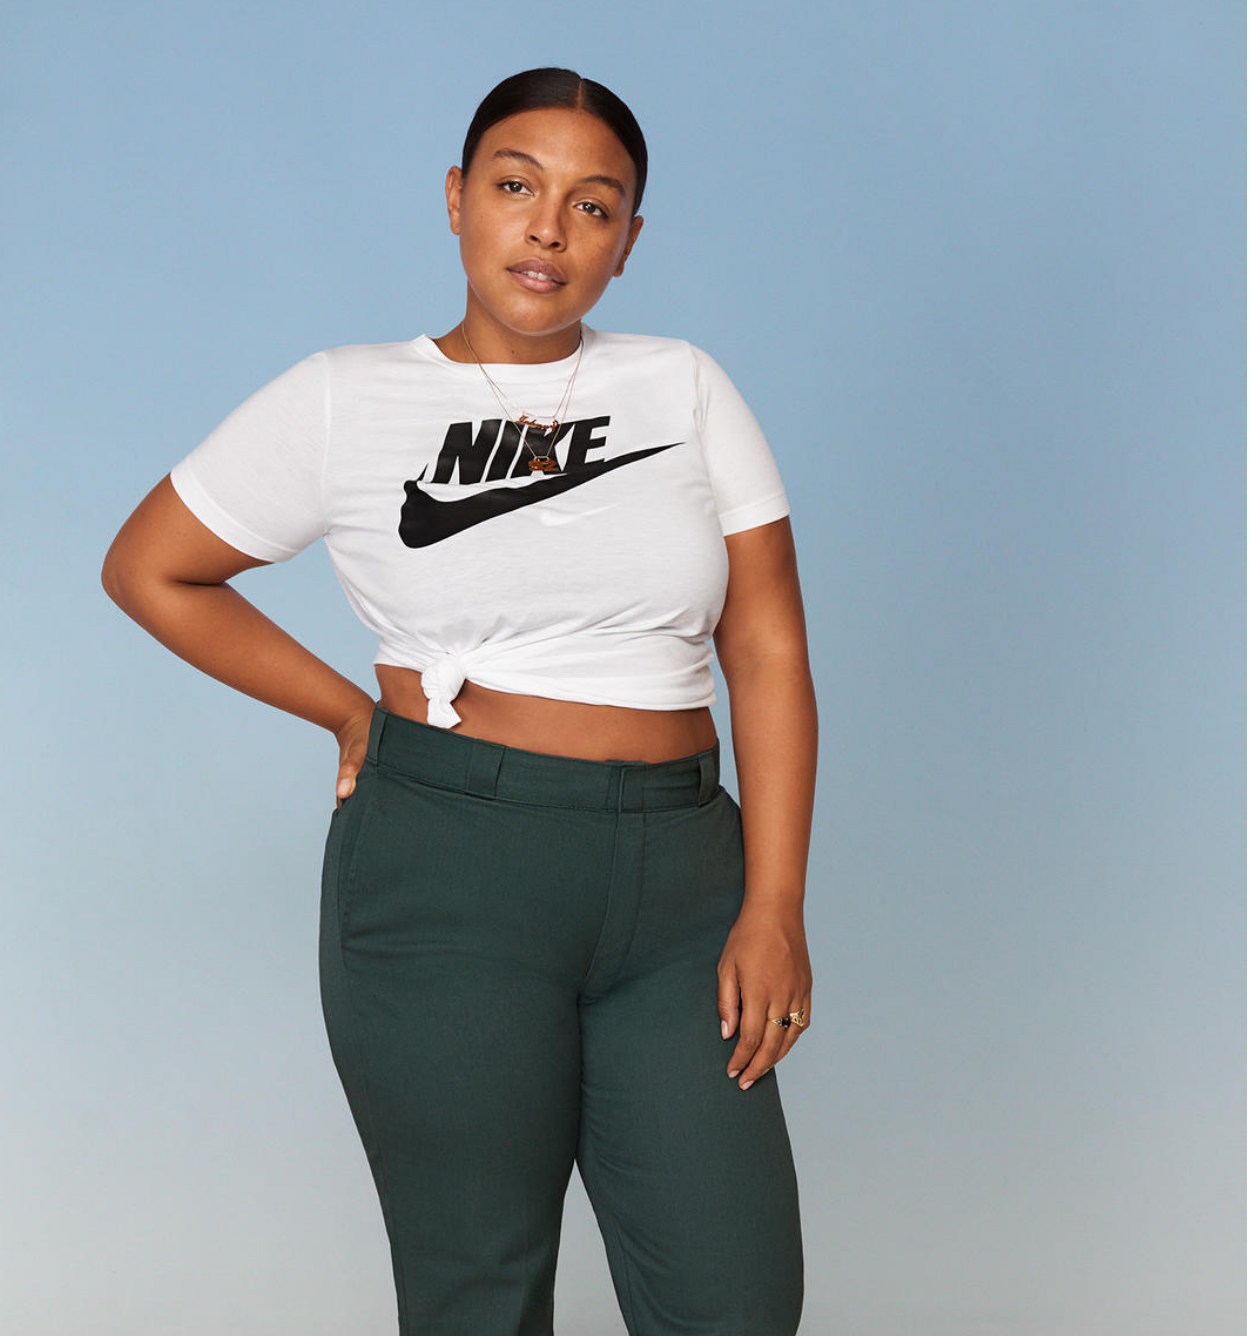 Nike lanza primera línea de ropa Plus Size para mujeres - Revista